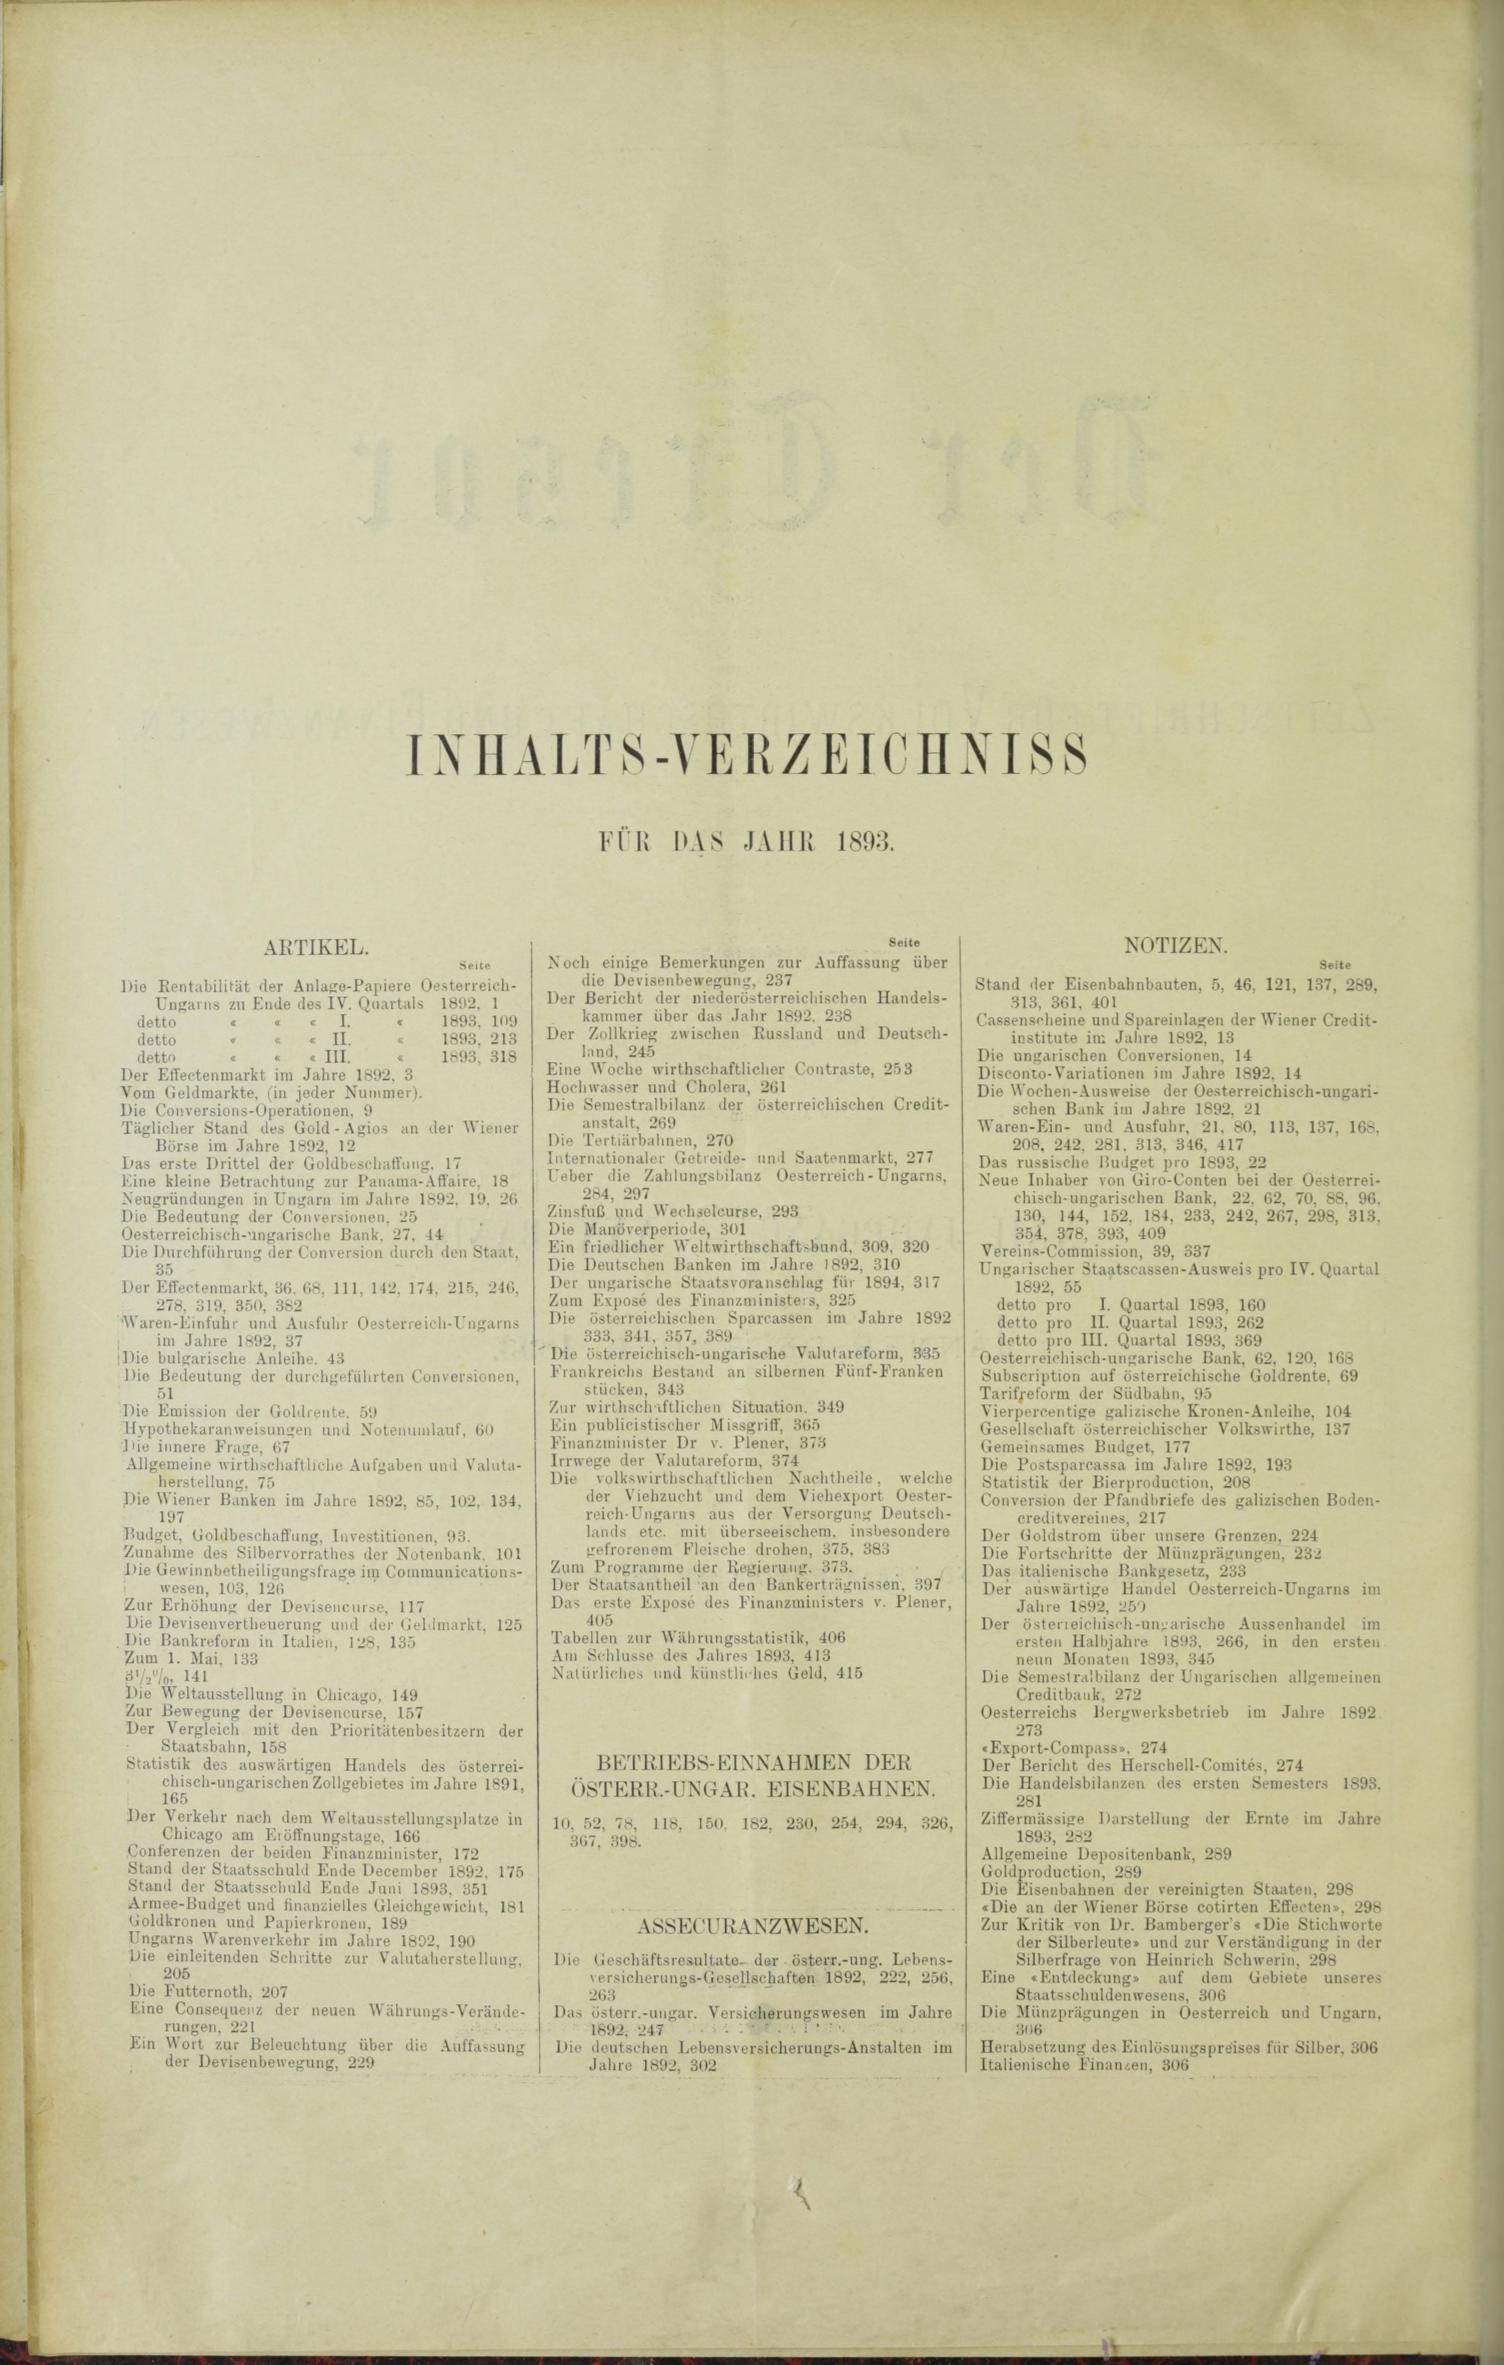 Der Tresor 25.05.1893 - Seite 10